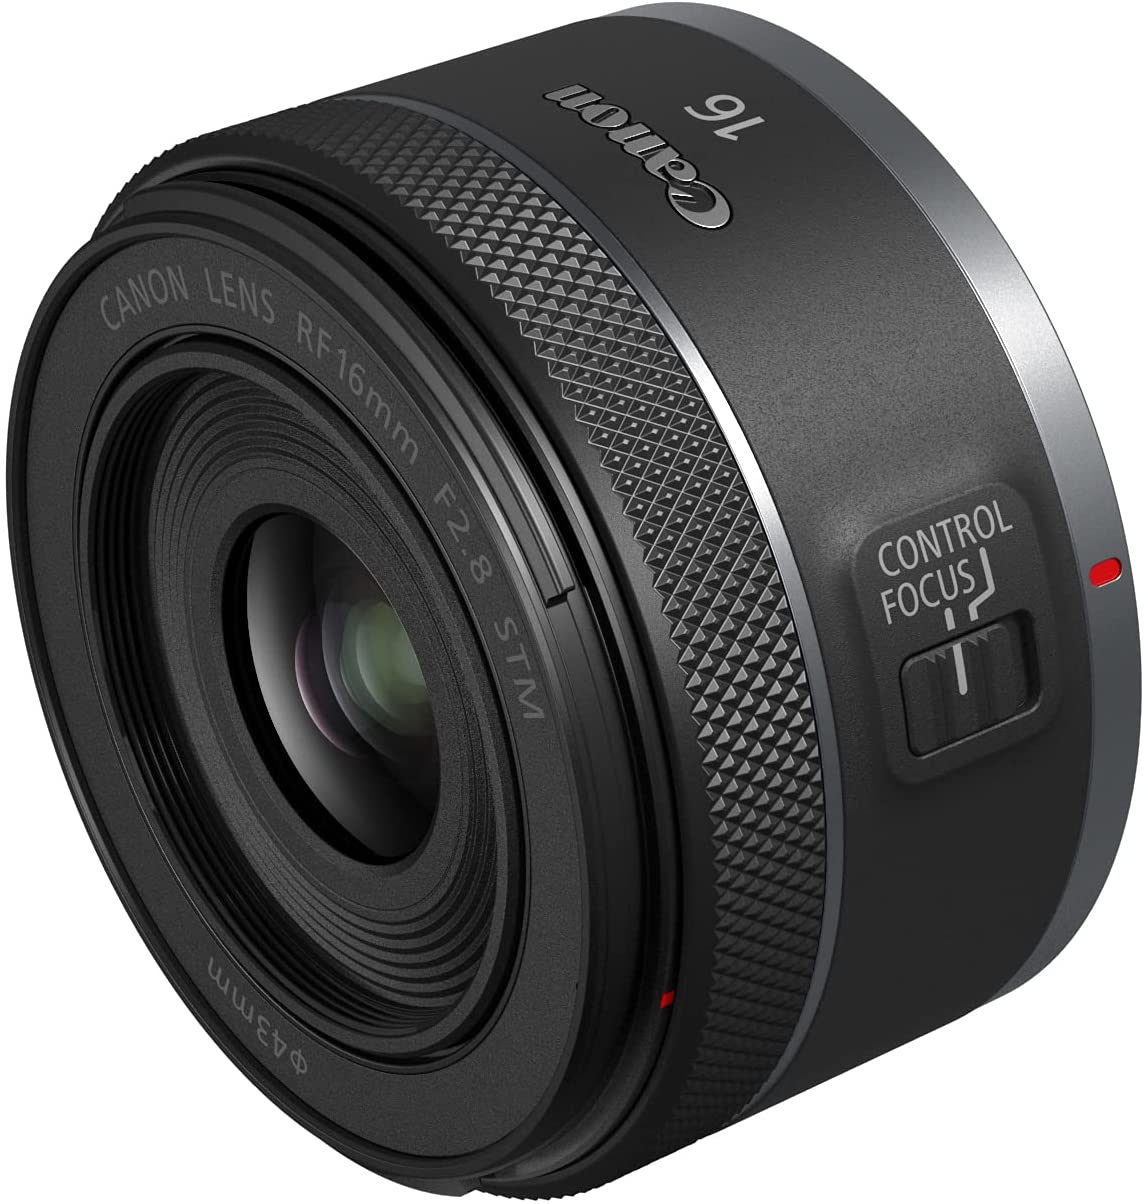 La nouvelle lentille RF 16mm f/2.8 de Canon